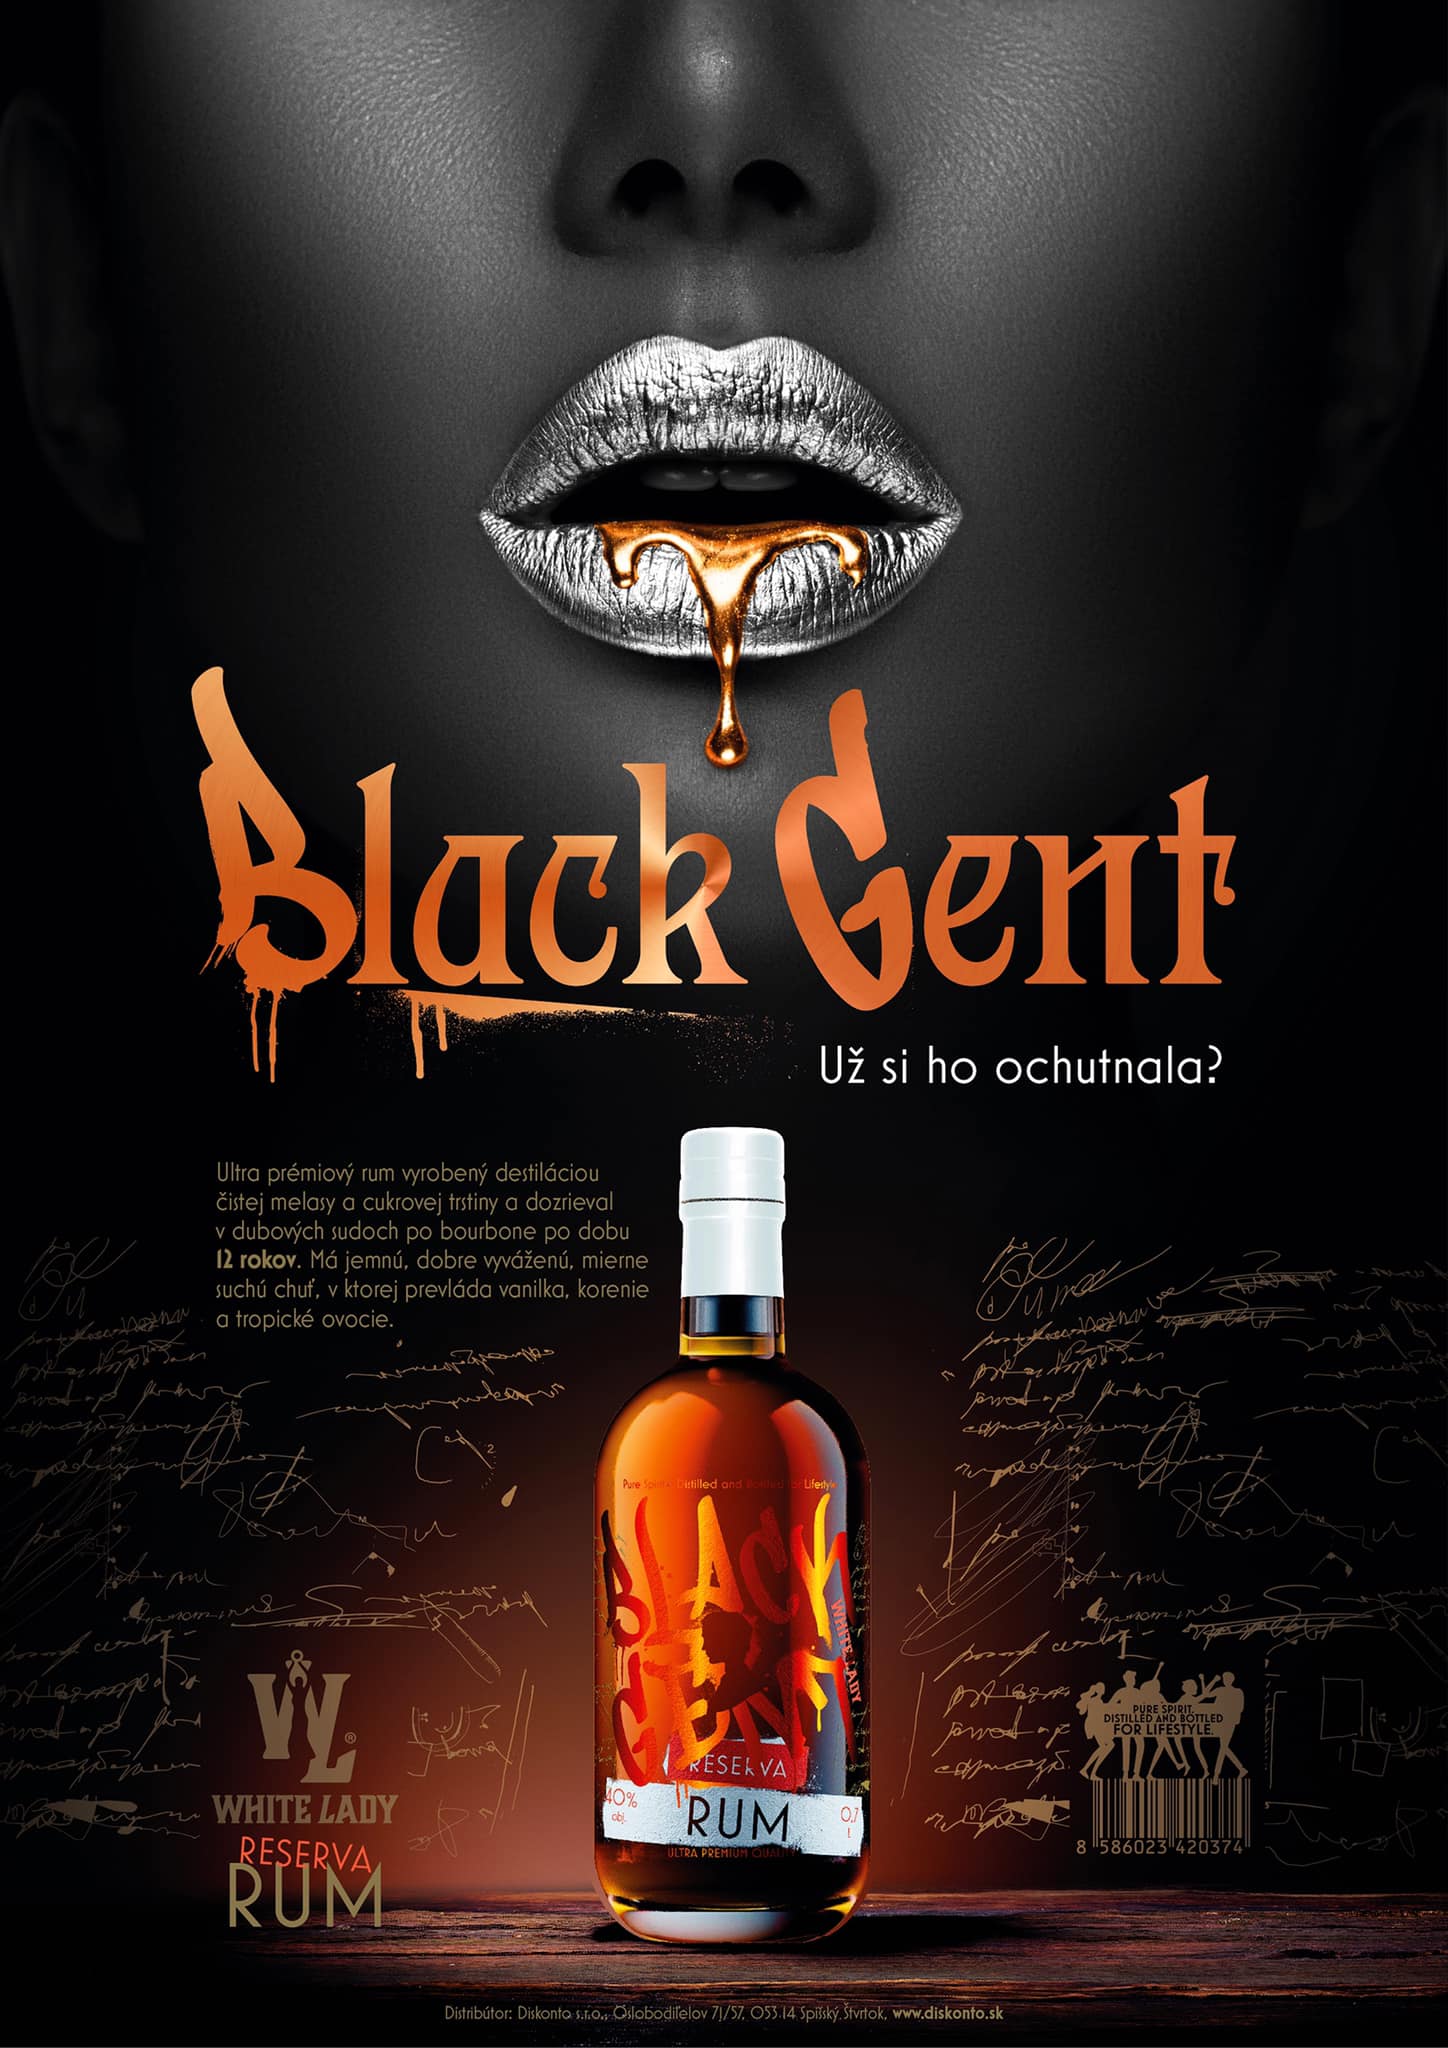 Black Gent rum